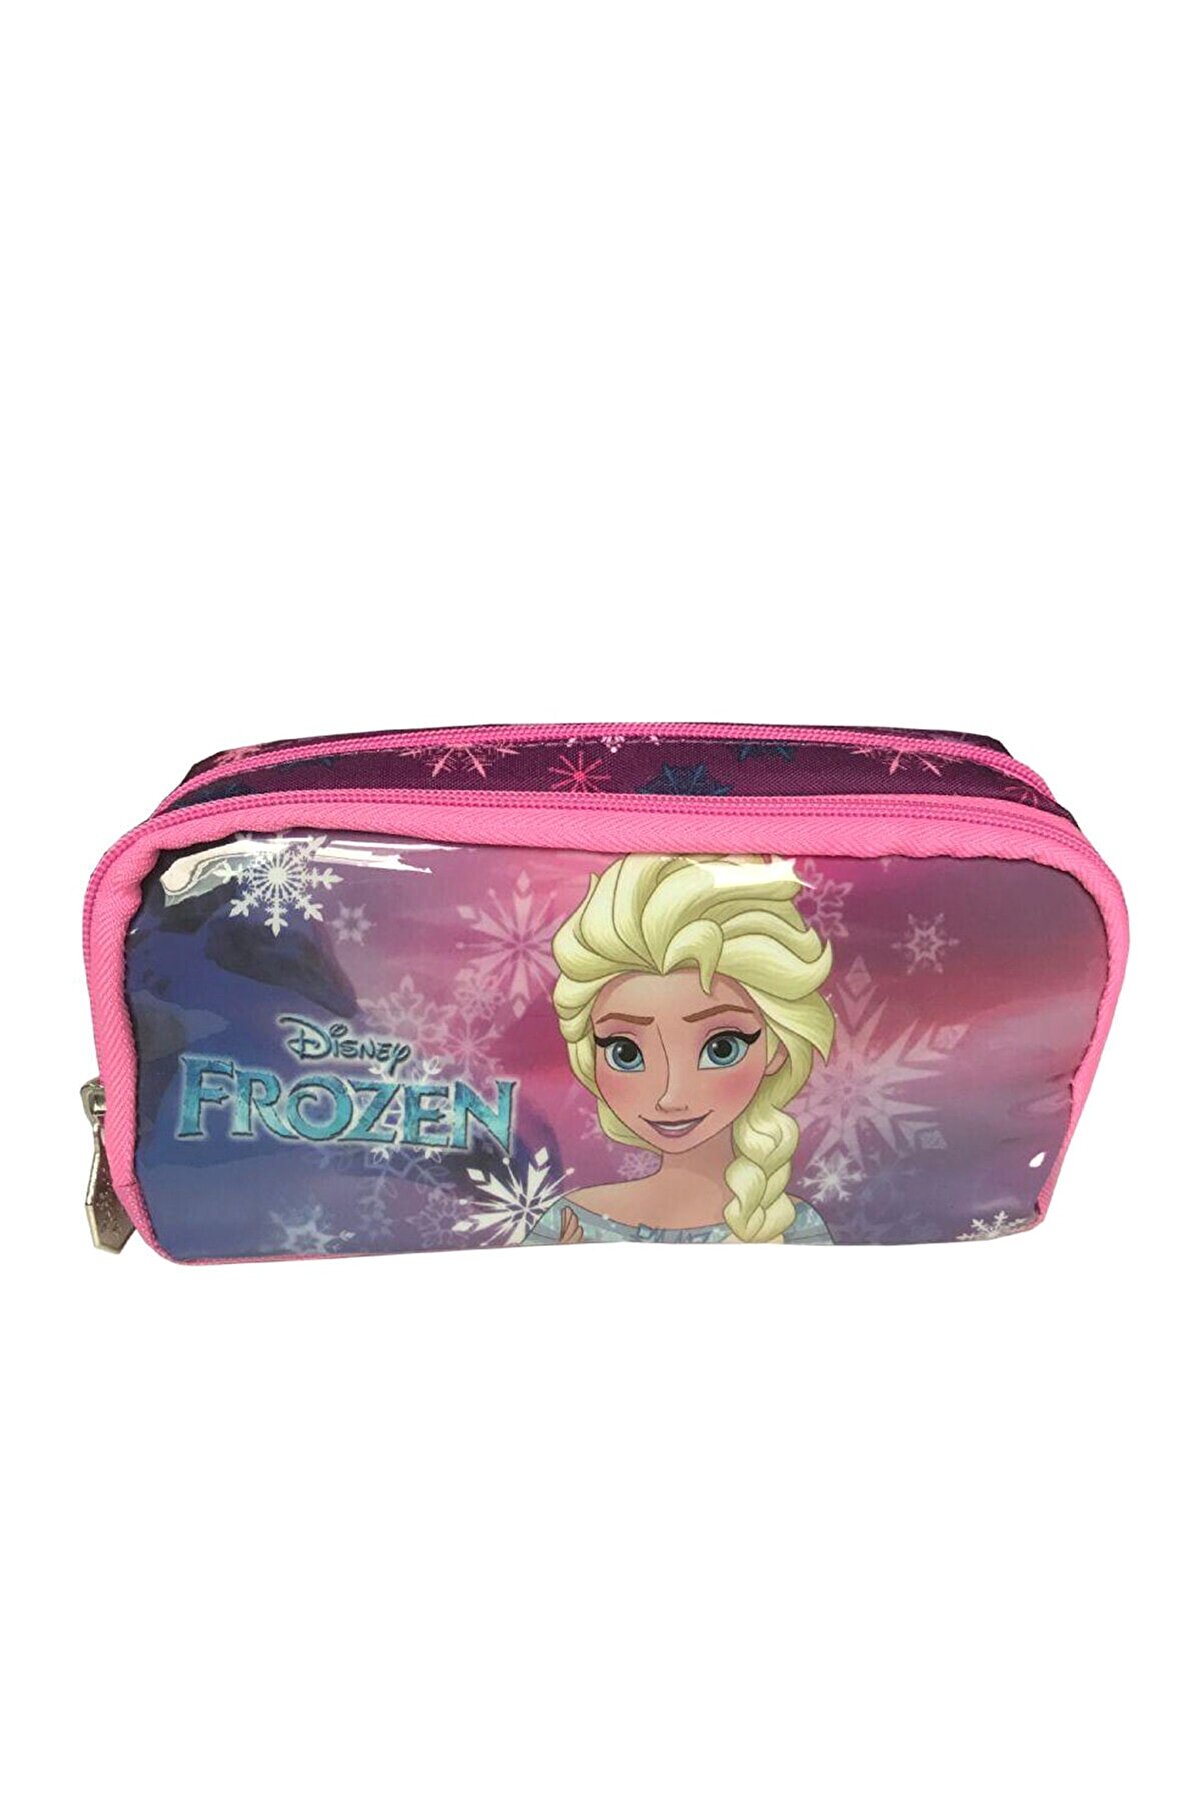 Frozen Disney Frozen Elsa Baskılı Kalem Çanta